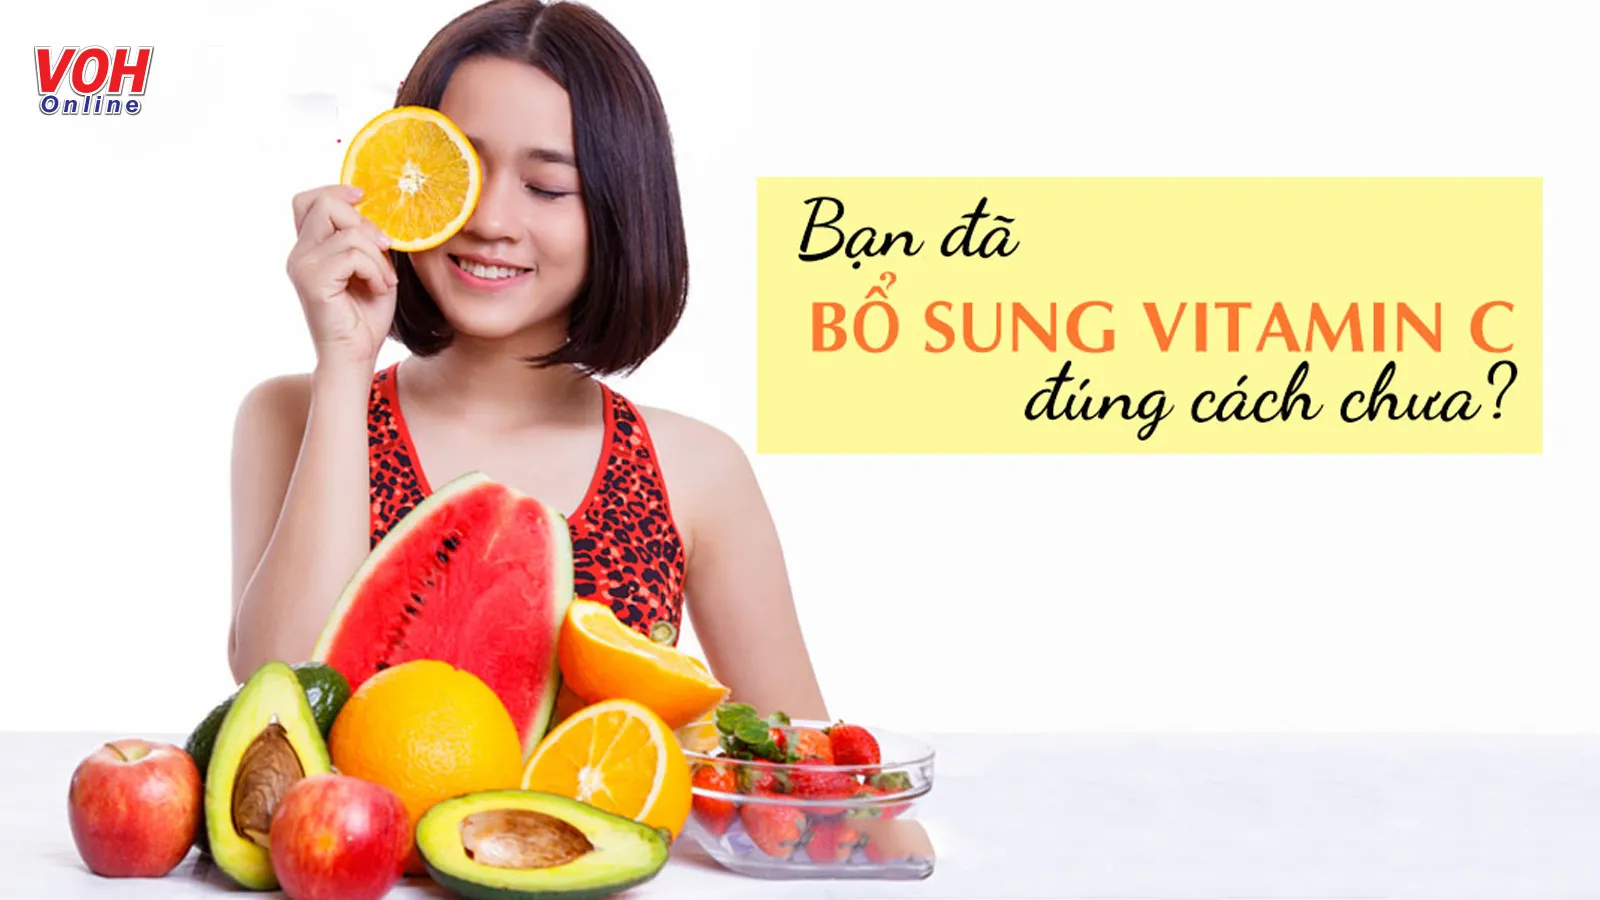 Bổ sung vitamin C bao nhiêu là đủ và cần lưu ý gì để hấp thu tốt?